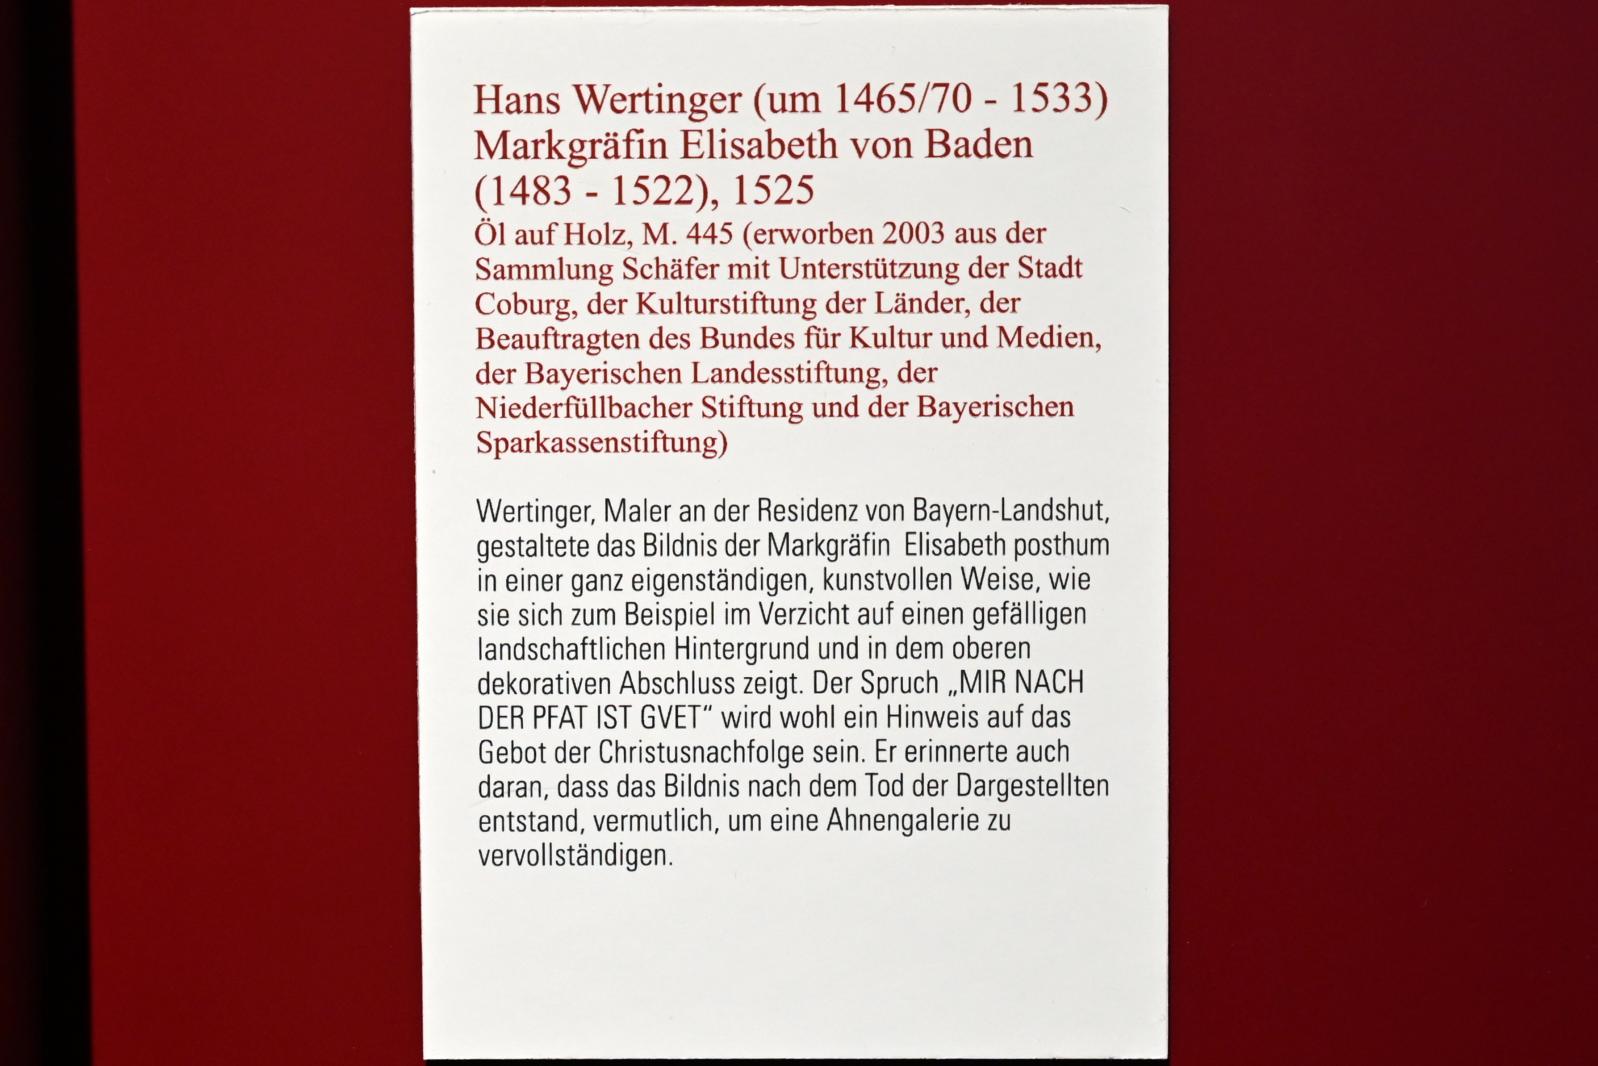 Hans Wertinger (1515–1526), Markgräfin Elisabeth von Baden (1483-1522), Coburg, Kunstsammlungen der Veste Coburg, Altdeutsche Malerei, 1525, Bild 2/2